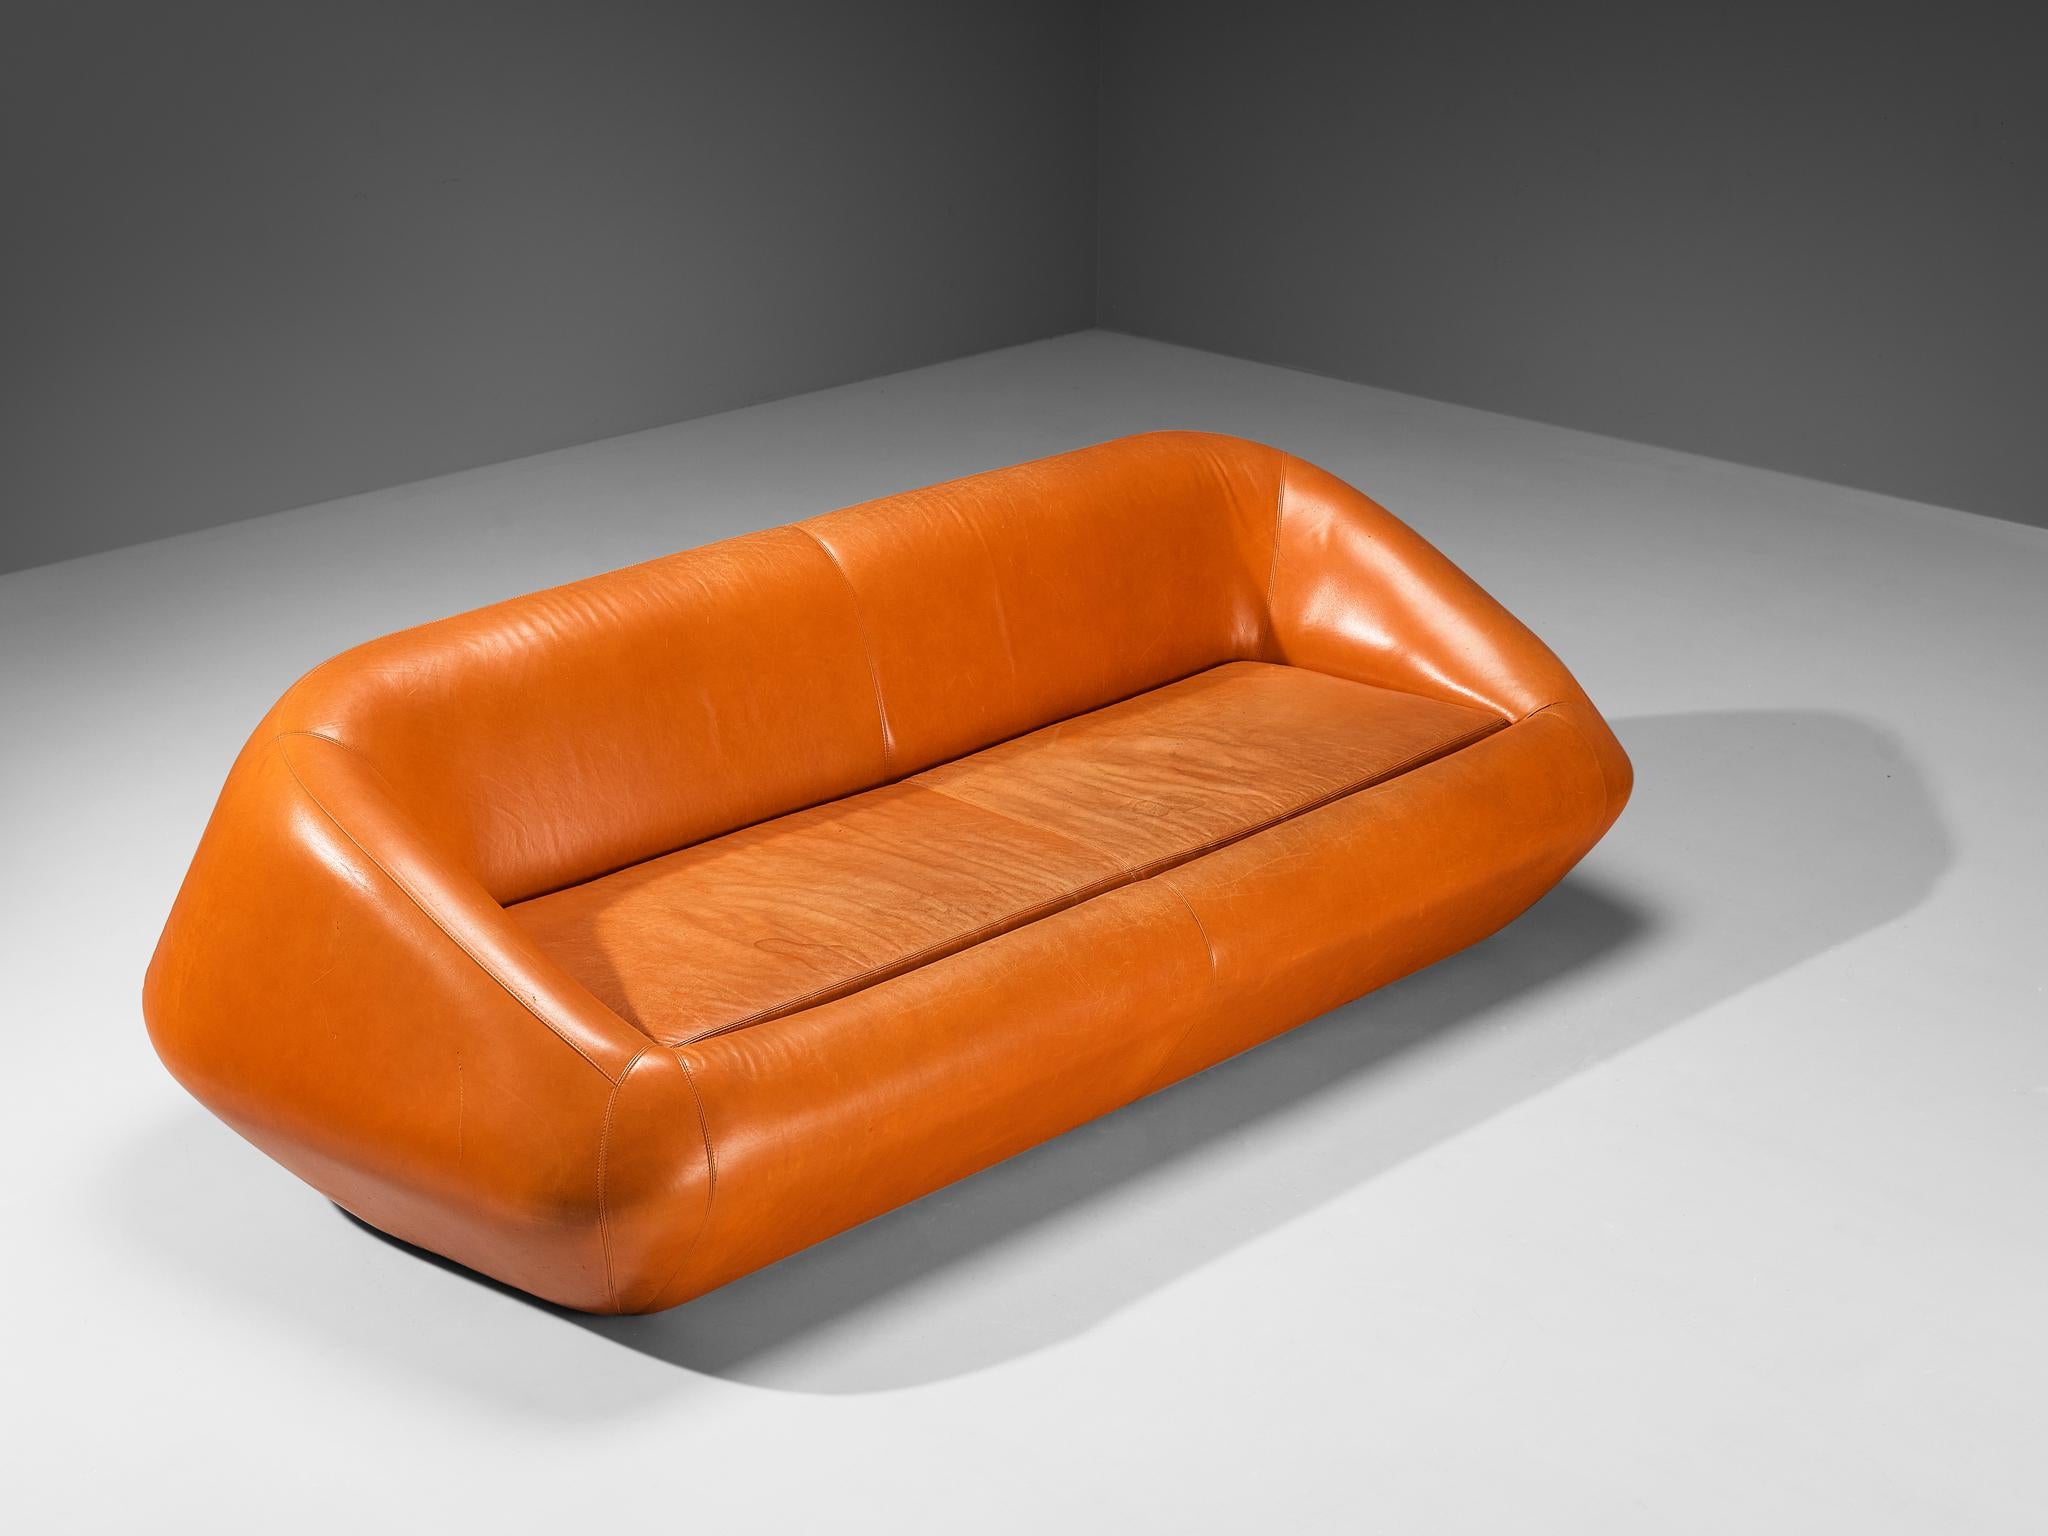 Dreisitziges Sofa, Leder, Europa, 1970er Jahre

Aufregendes Sofadesign mit starken Space-Age-Eigenschaften. Dieses Sofa wurde in den 1970er Jahren in Europa hergestellt und bringt die postmodernen Züge dieser Zeit im Möbeldesign deutlich zum